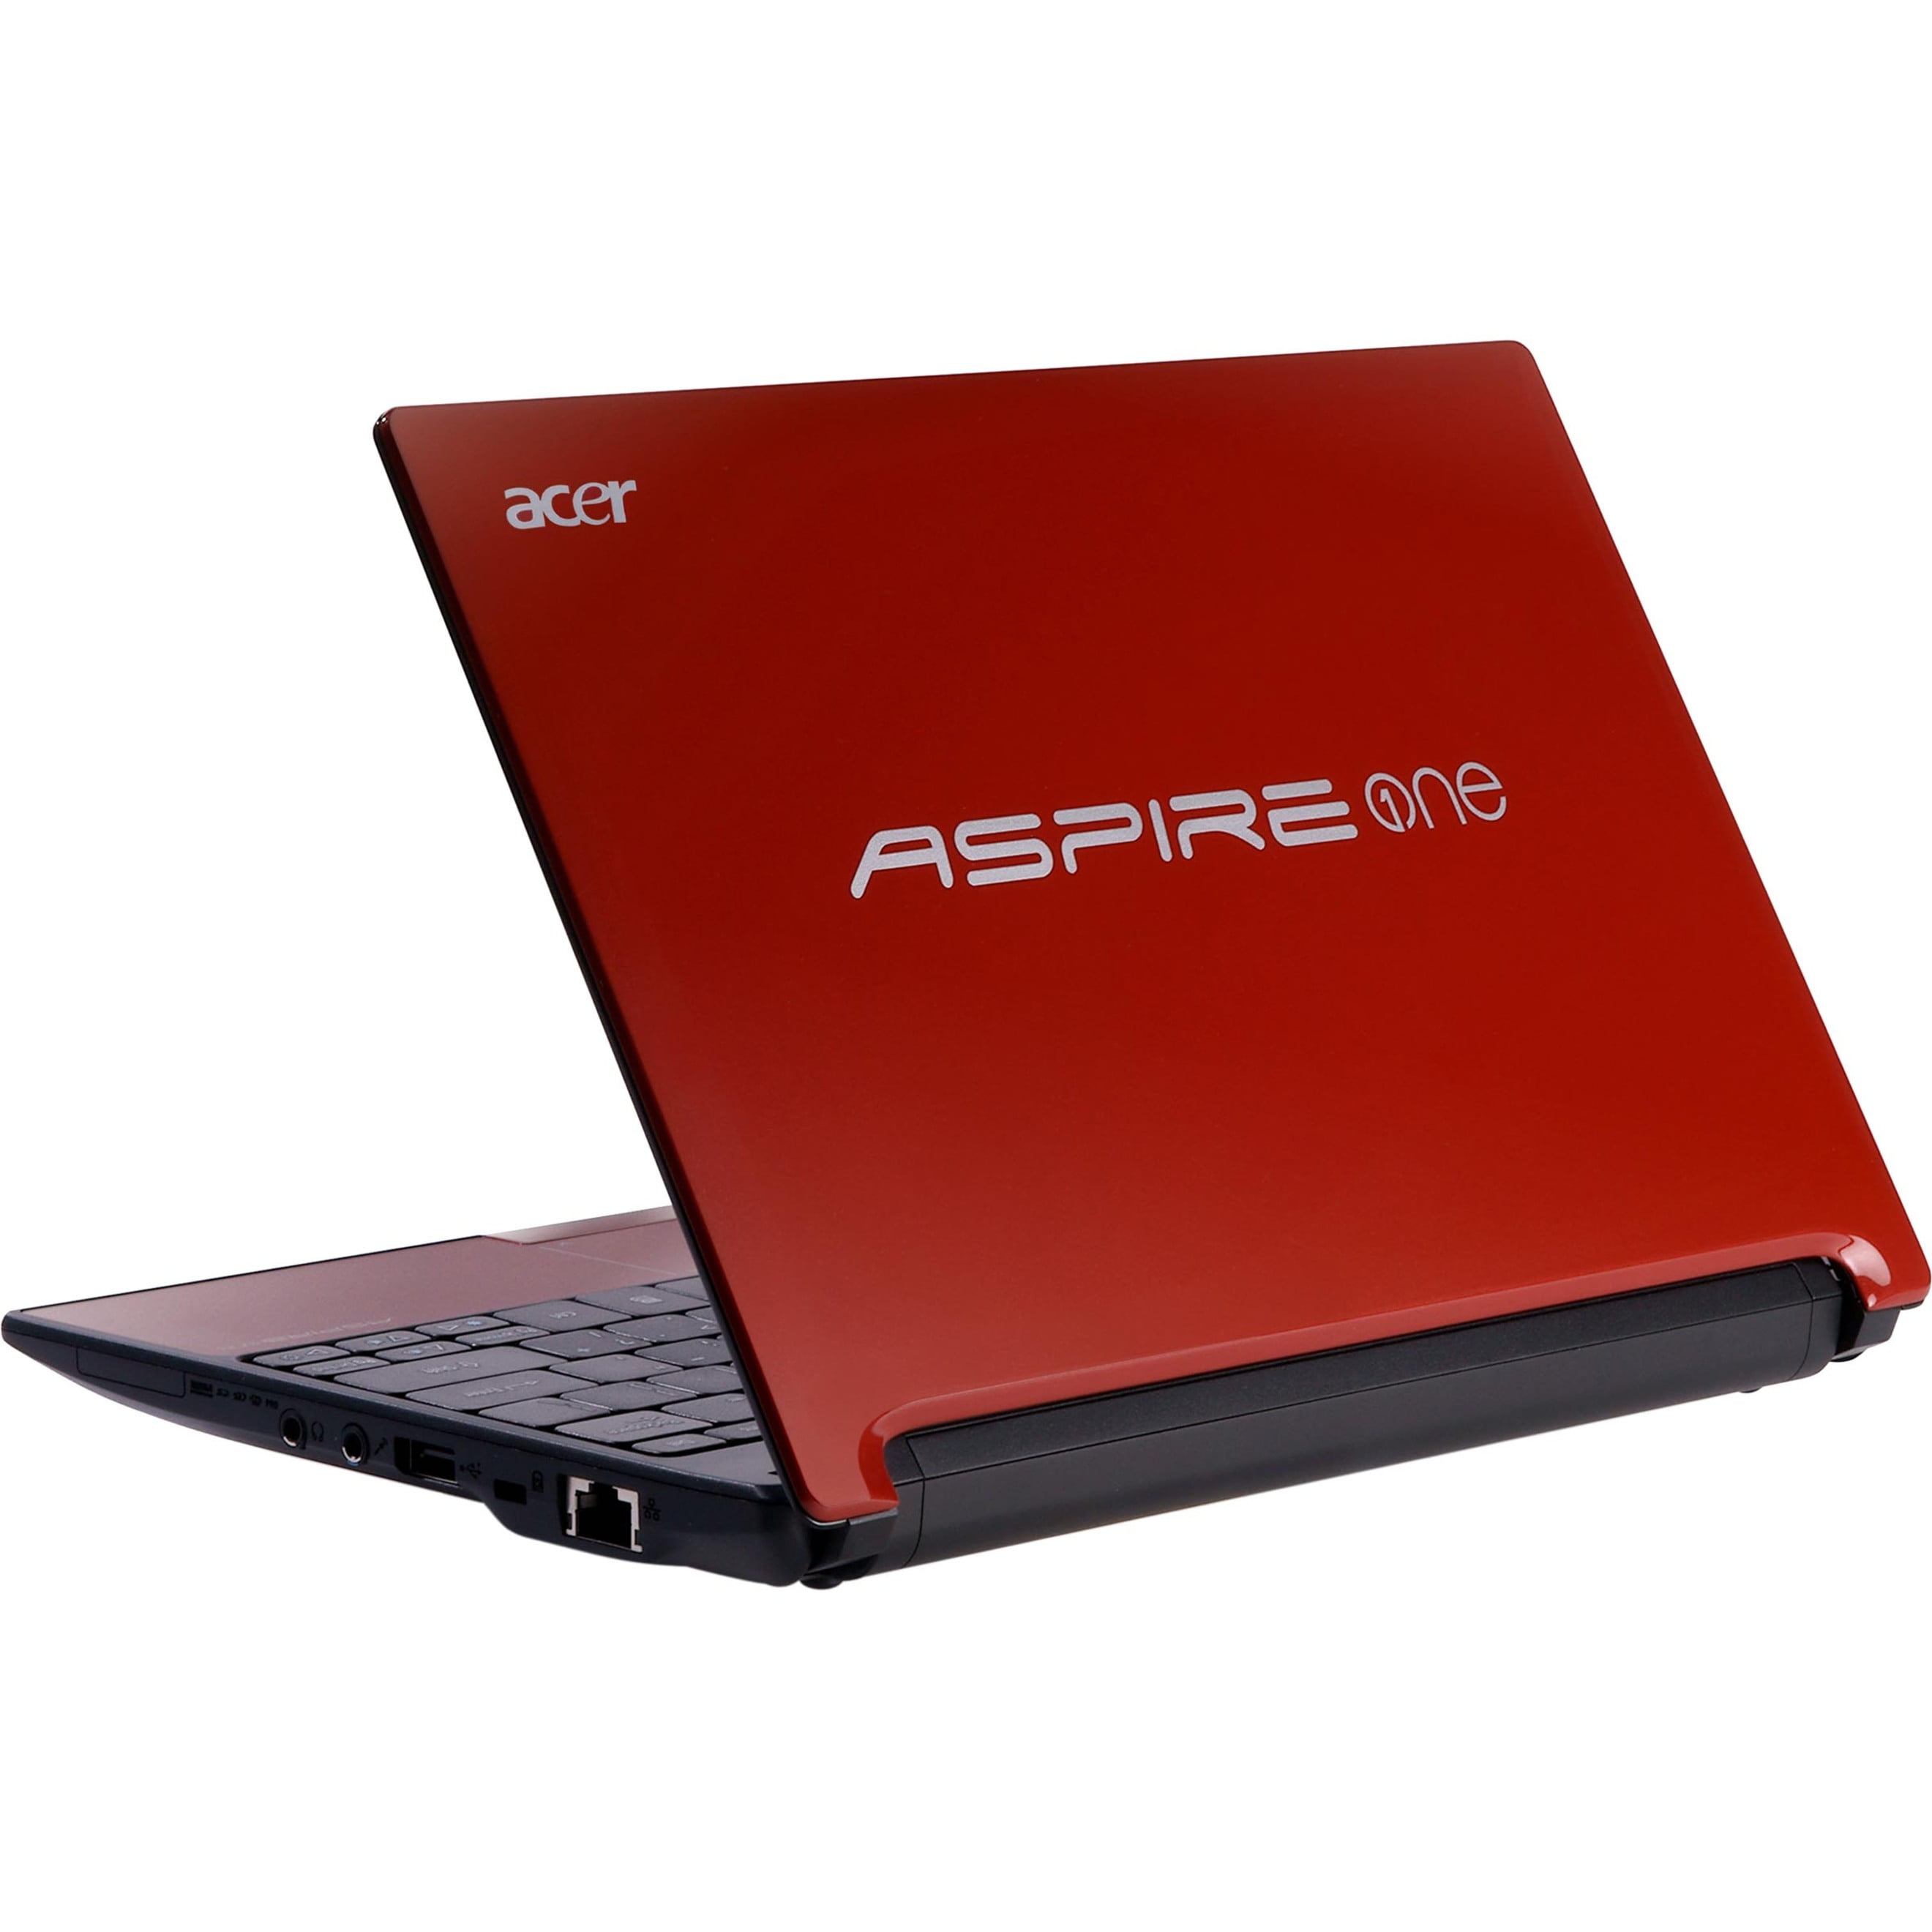 Acer aspire one купить. Acer Aspire one d255. Нетбук Acer Aspire one d270. Нетбук Acer Aspire one 255. Нетбук Acer Aspire one красный.